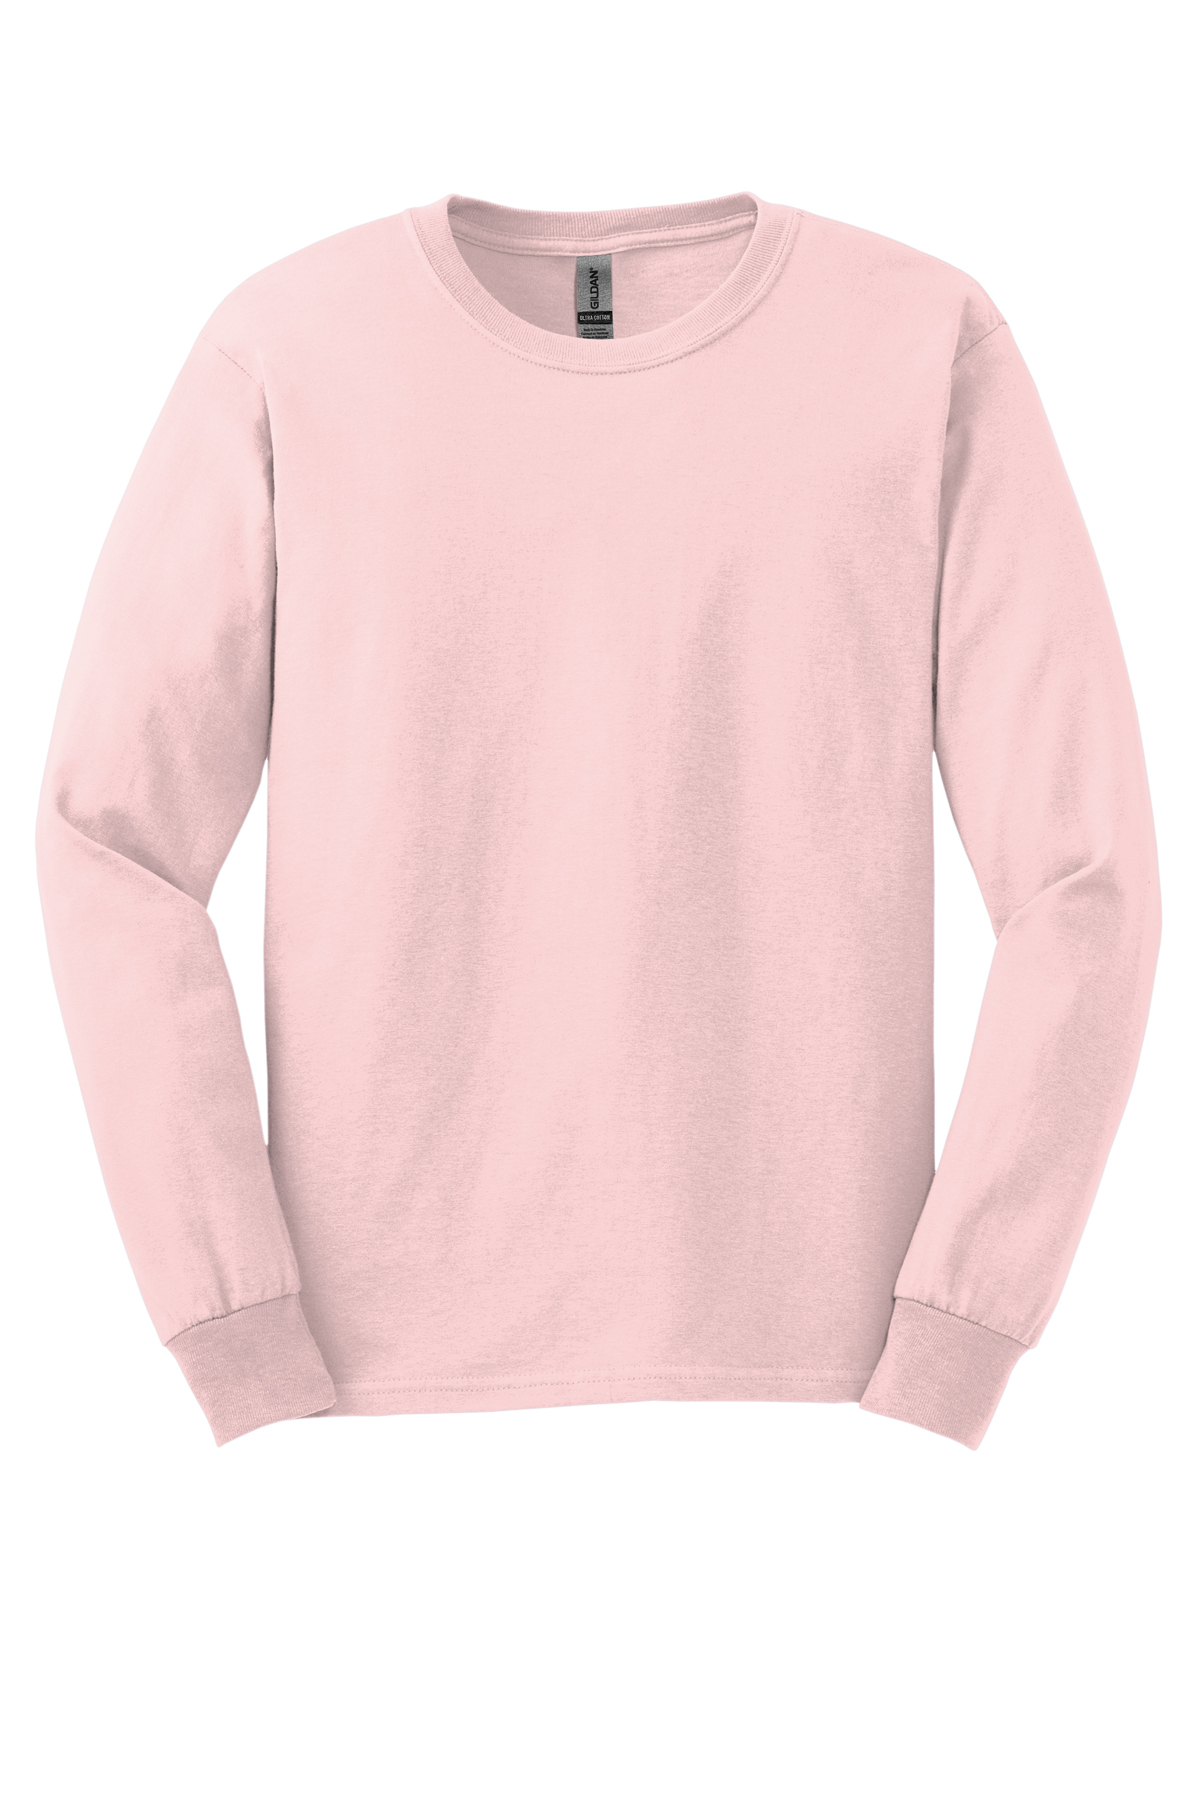 Louisville Slugger T-shirt Pink Medium Short Sleeve Gildan (Bin D)